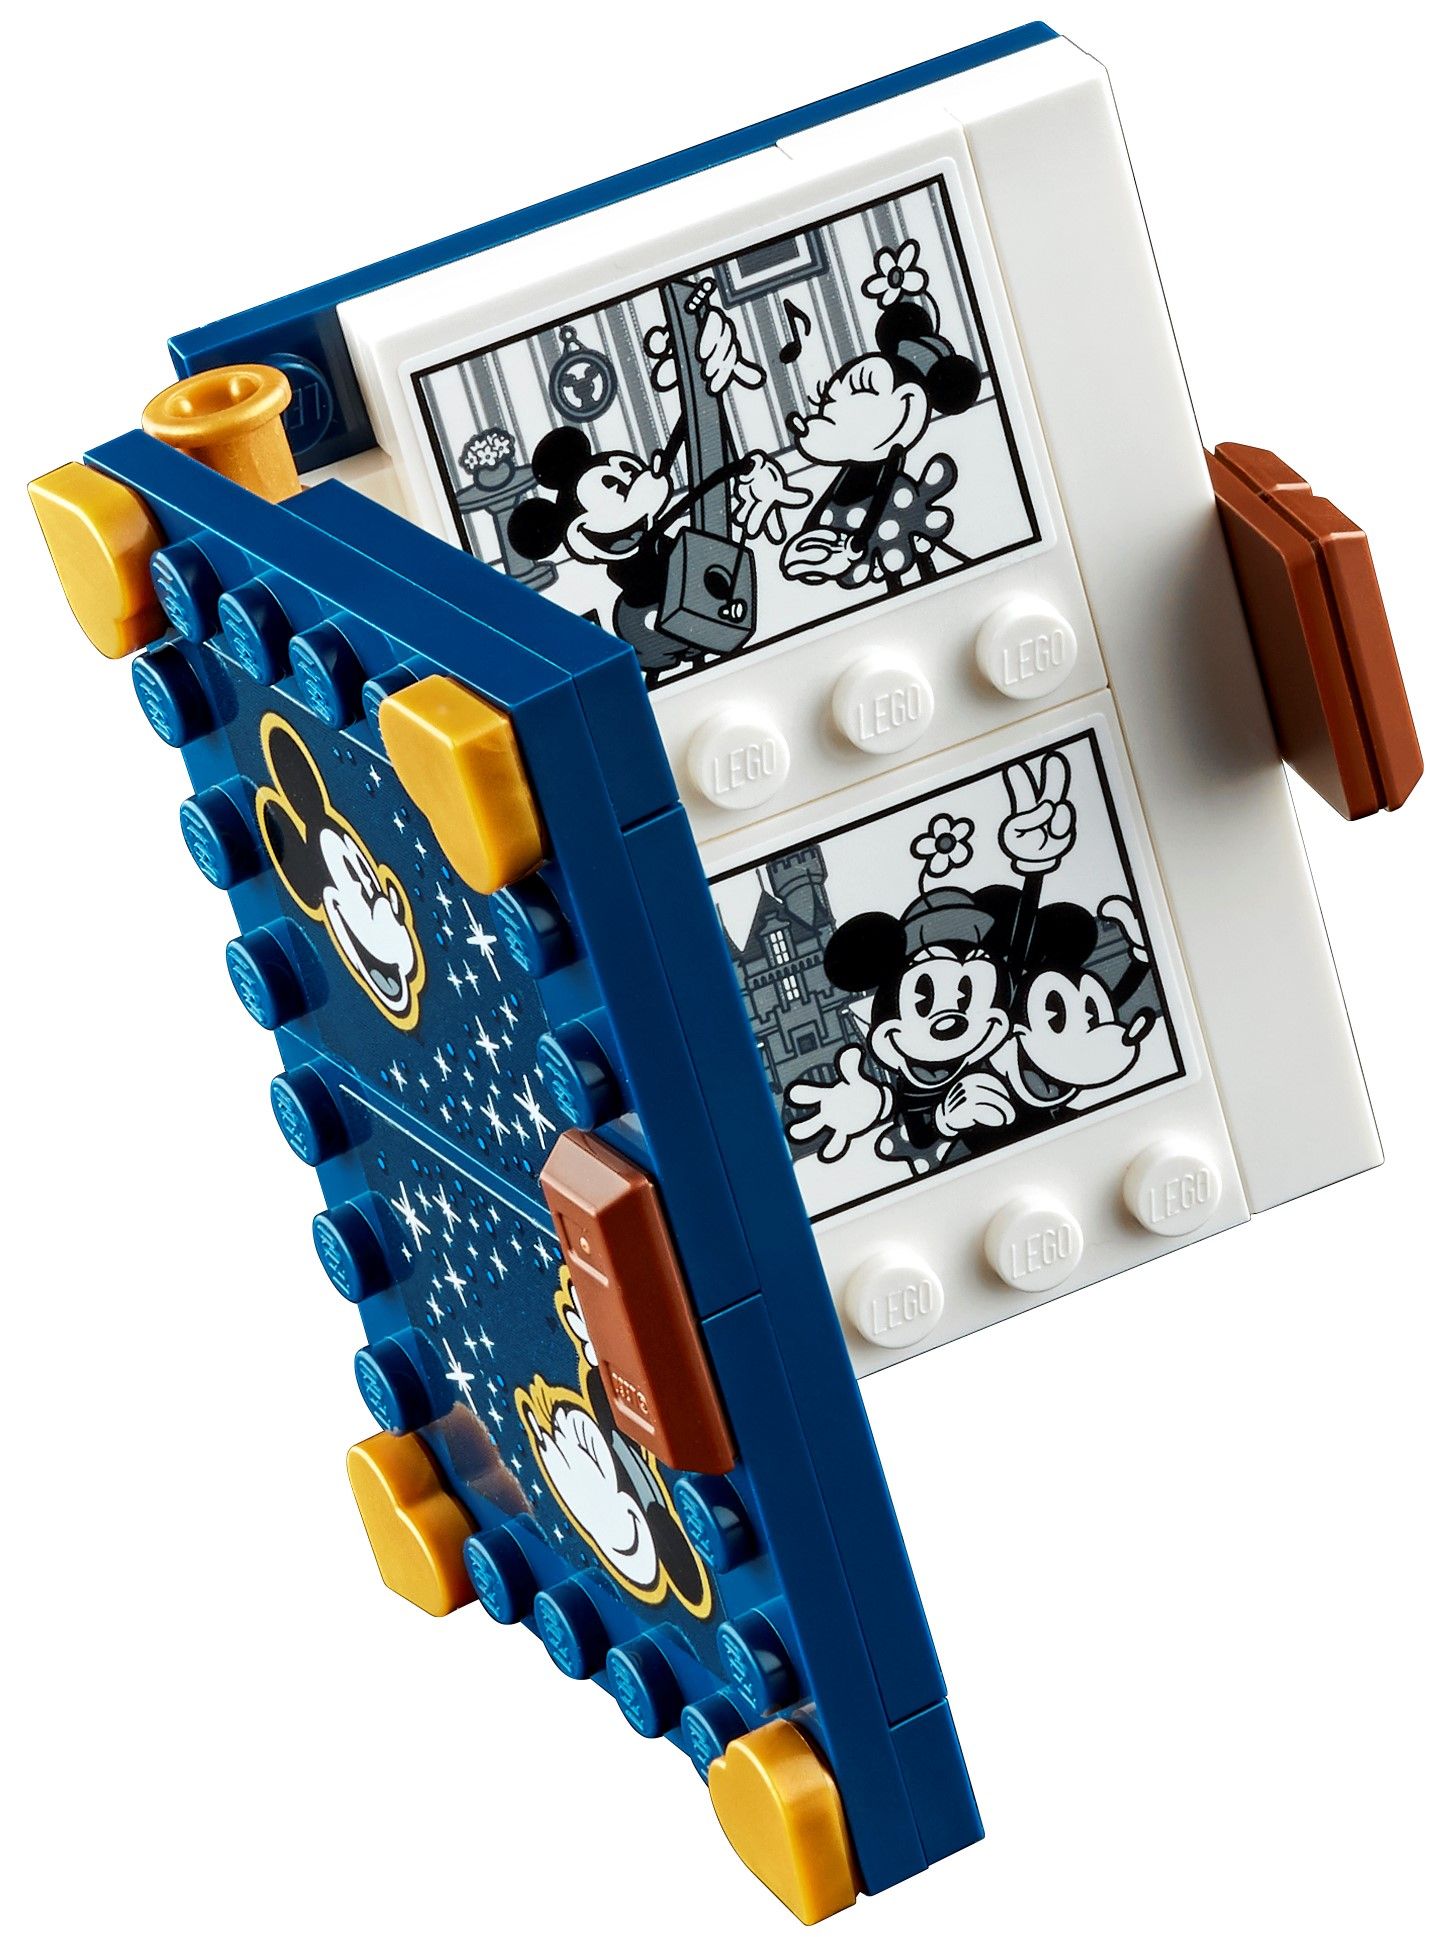 LEGO Disney 43179 Micky Maus und Minnie Maus LEGO_43179_alt5.jpg